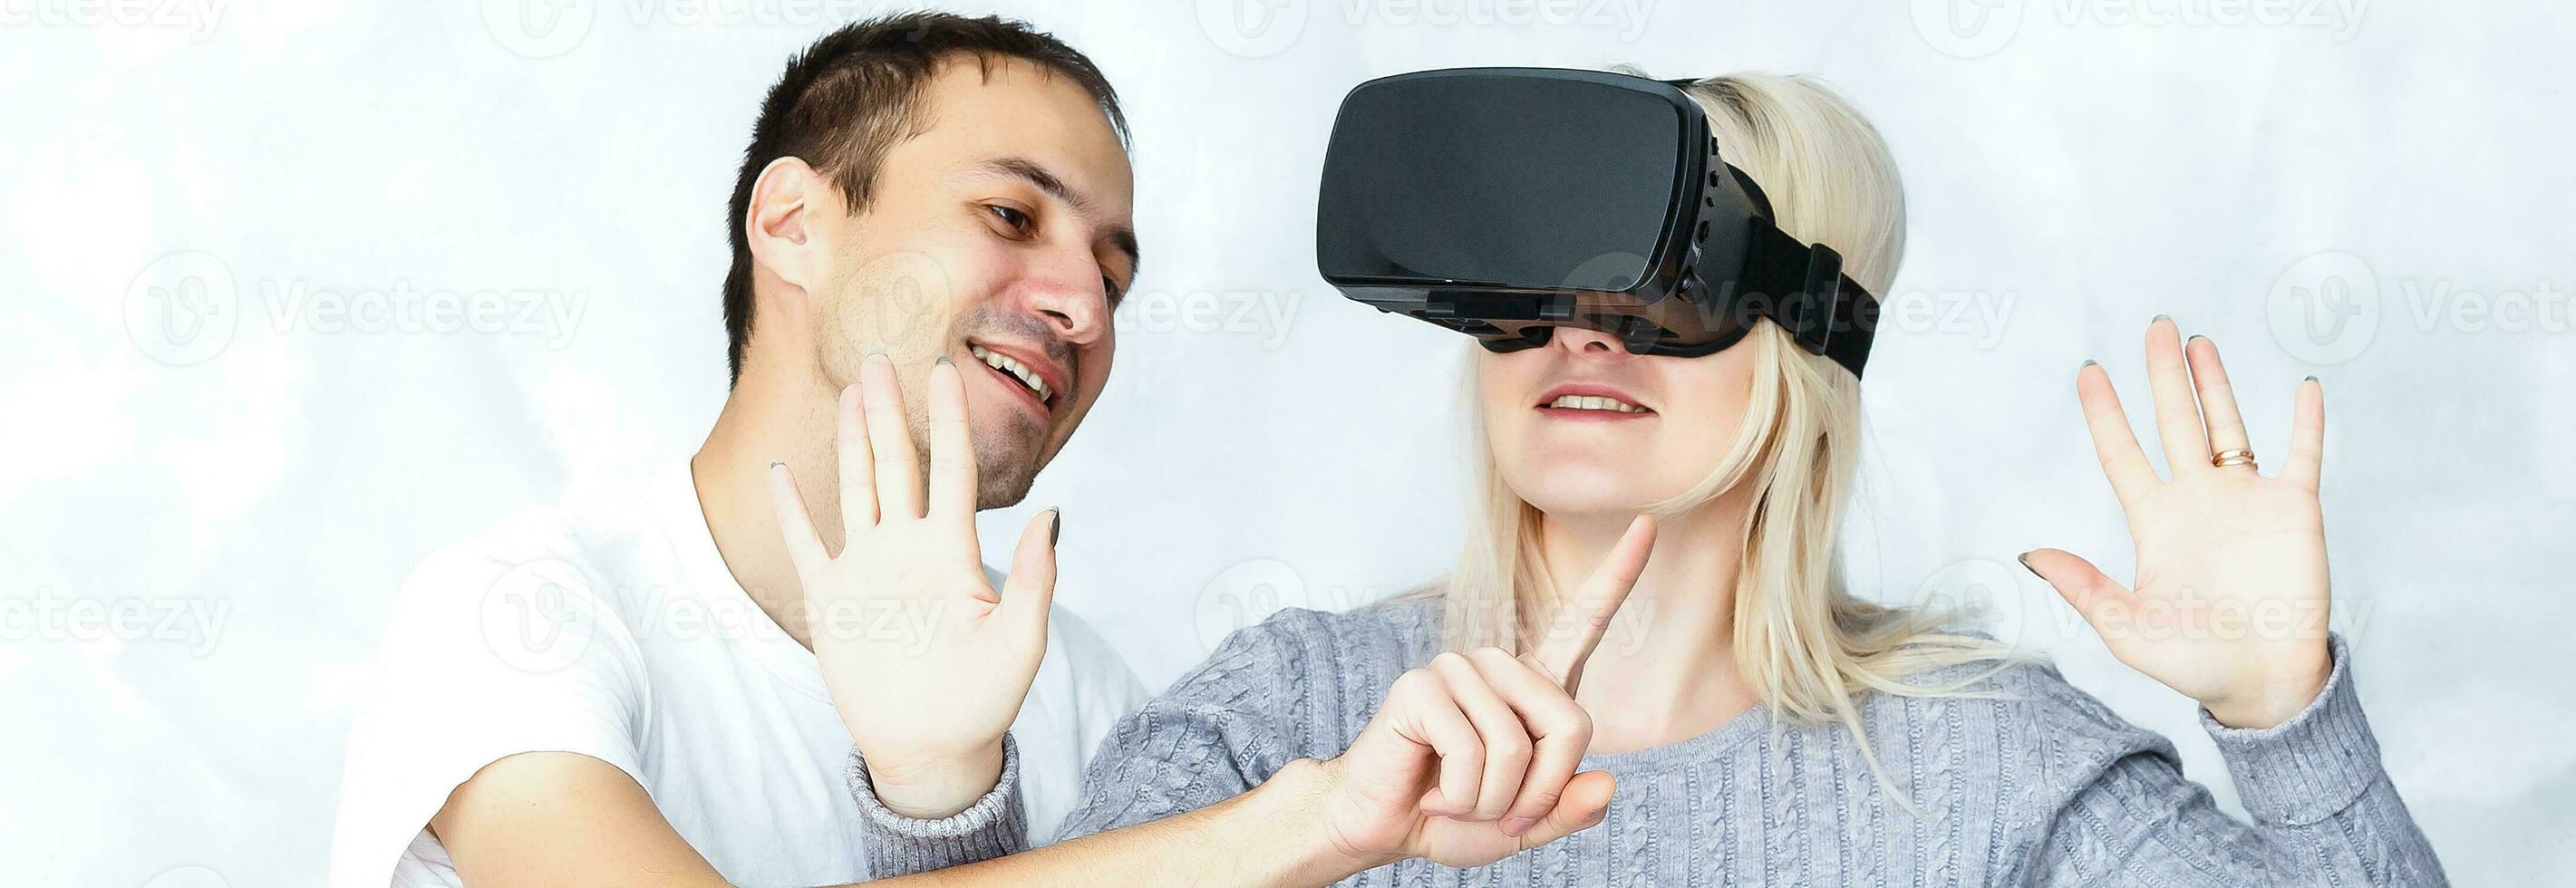 jung Paar haben Spaß mit virtuell Wirklichkeit Brille Headset Brille - - glücklich Menschen spielen Spiel mit Neu Trends Technologie - - Zukunft Konzept - - Fokus auf Headsets foto